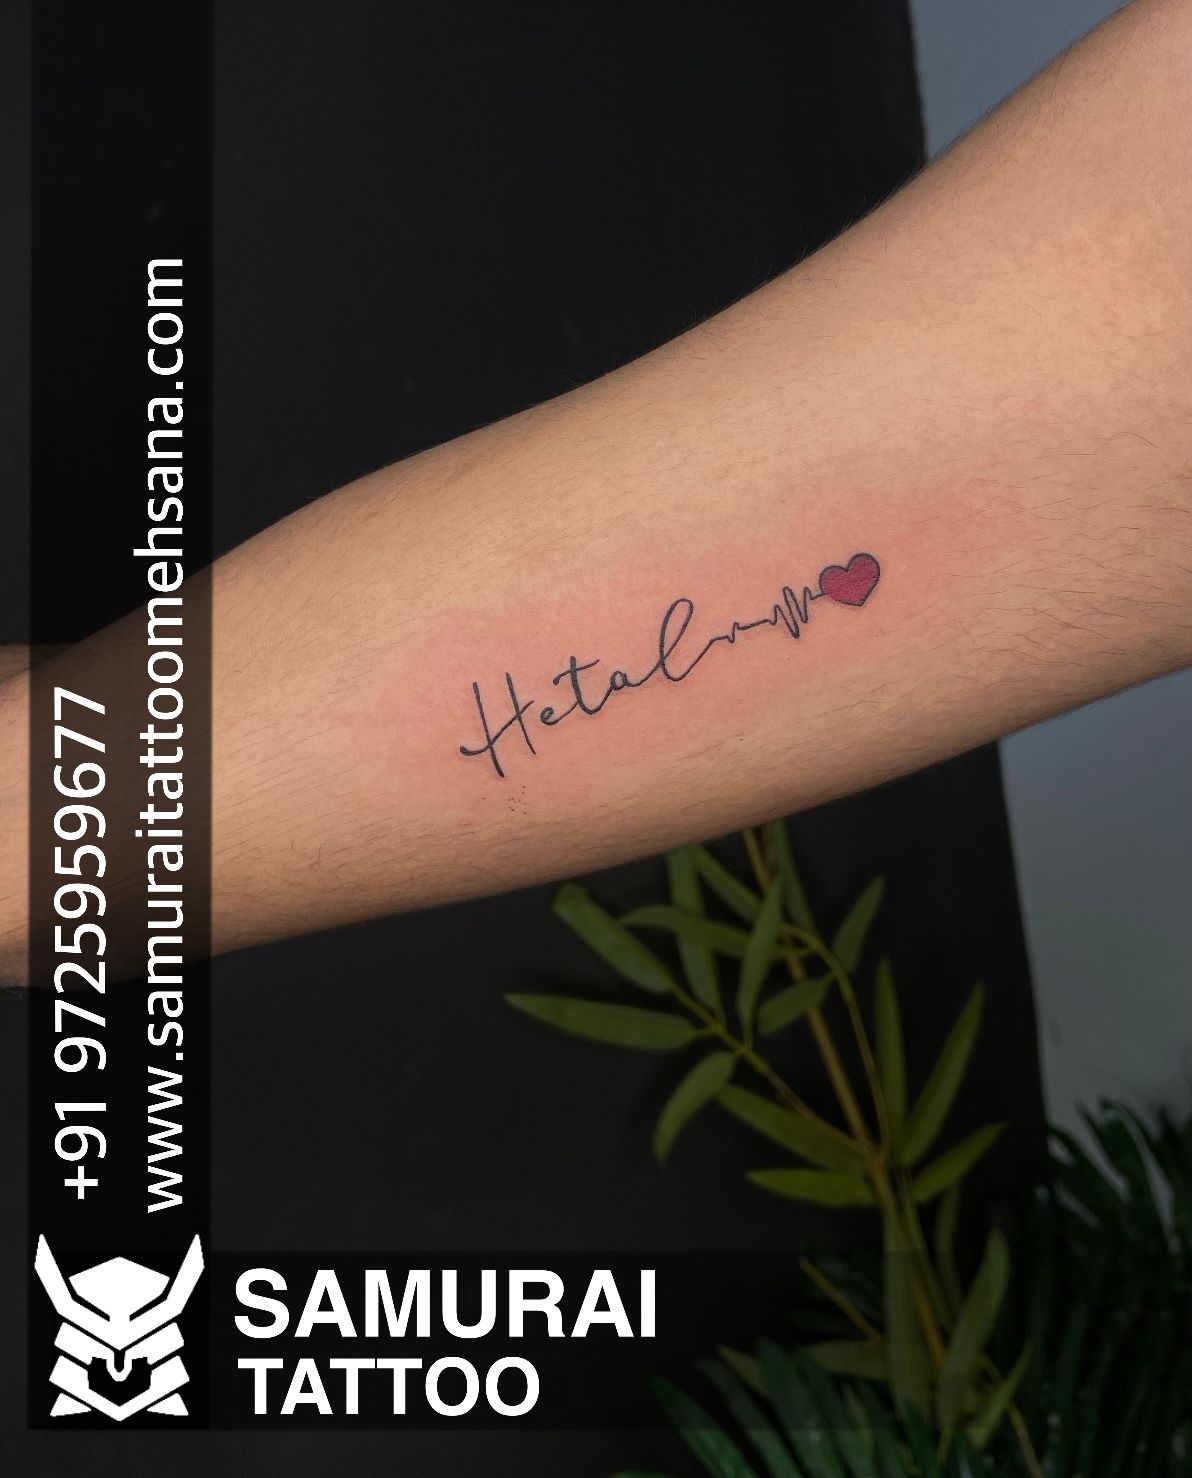 samurai tattoo mehsana on Twitter hitesh name tattoo  Hitesh name tattoo  design  Hitesh tattoo httpstcoeBb9FZZu4g  Twitter